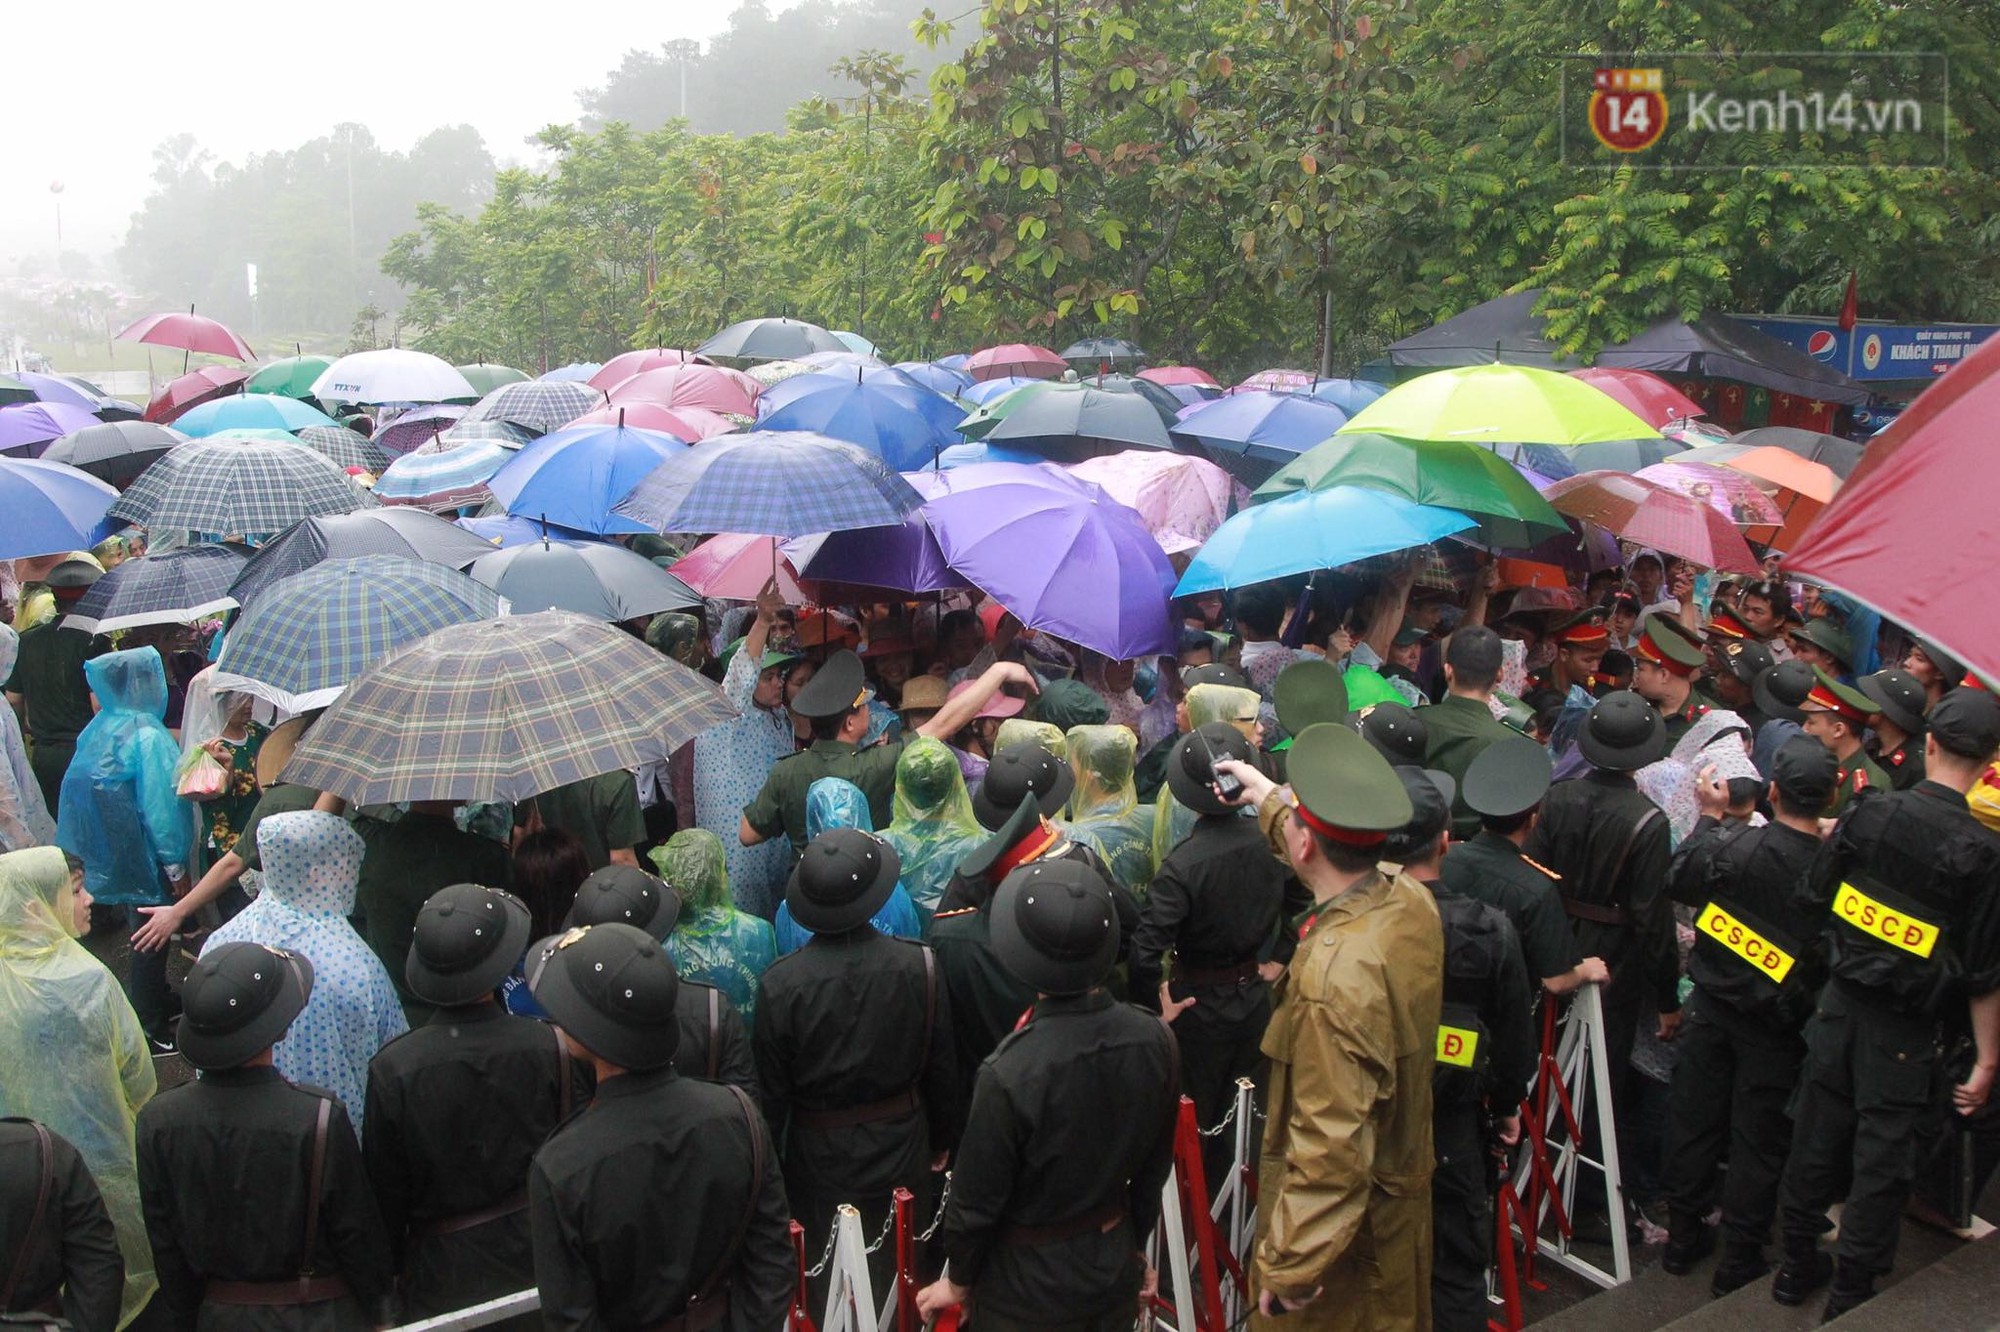 Hàng vạn người dân che ô đi khai hội Đền Hùng, hàng rào sống đứng dưới mưa đảm bảo trật tự cho lễ hội - Ảnh 12.